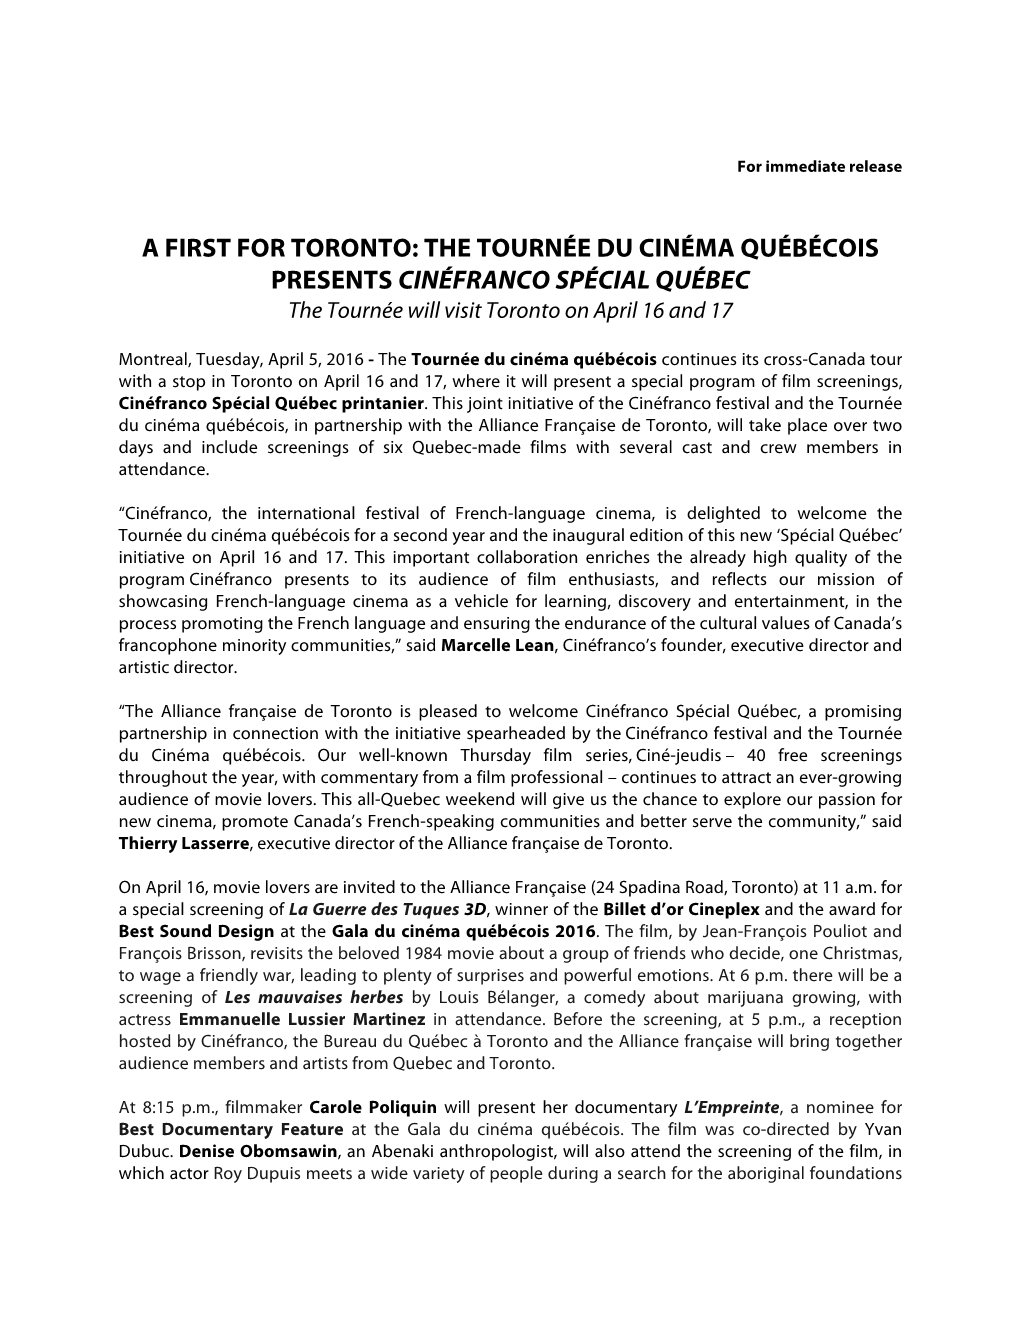 A FIRST for TORONTO: the TOURNÉE DU CINÉMA QUÉBÉCOIS PRESENTS CINÉFRANCO SPÉCIAL QUÉBEC the Tournée Will Visit Toronto on April 16 and 17